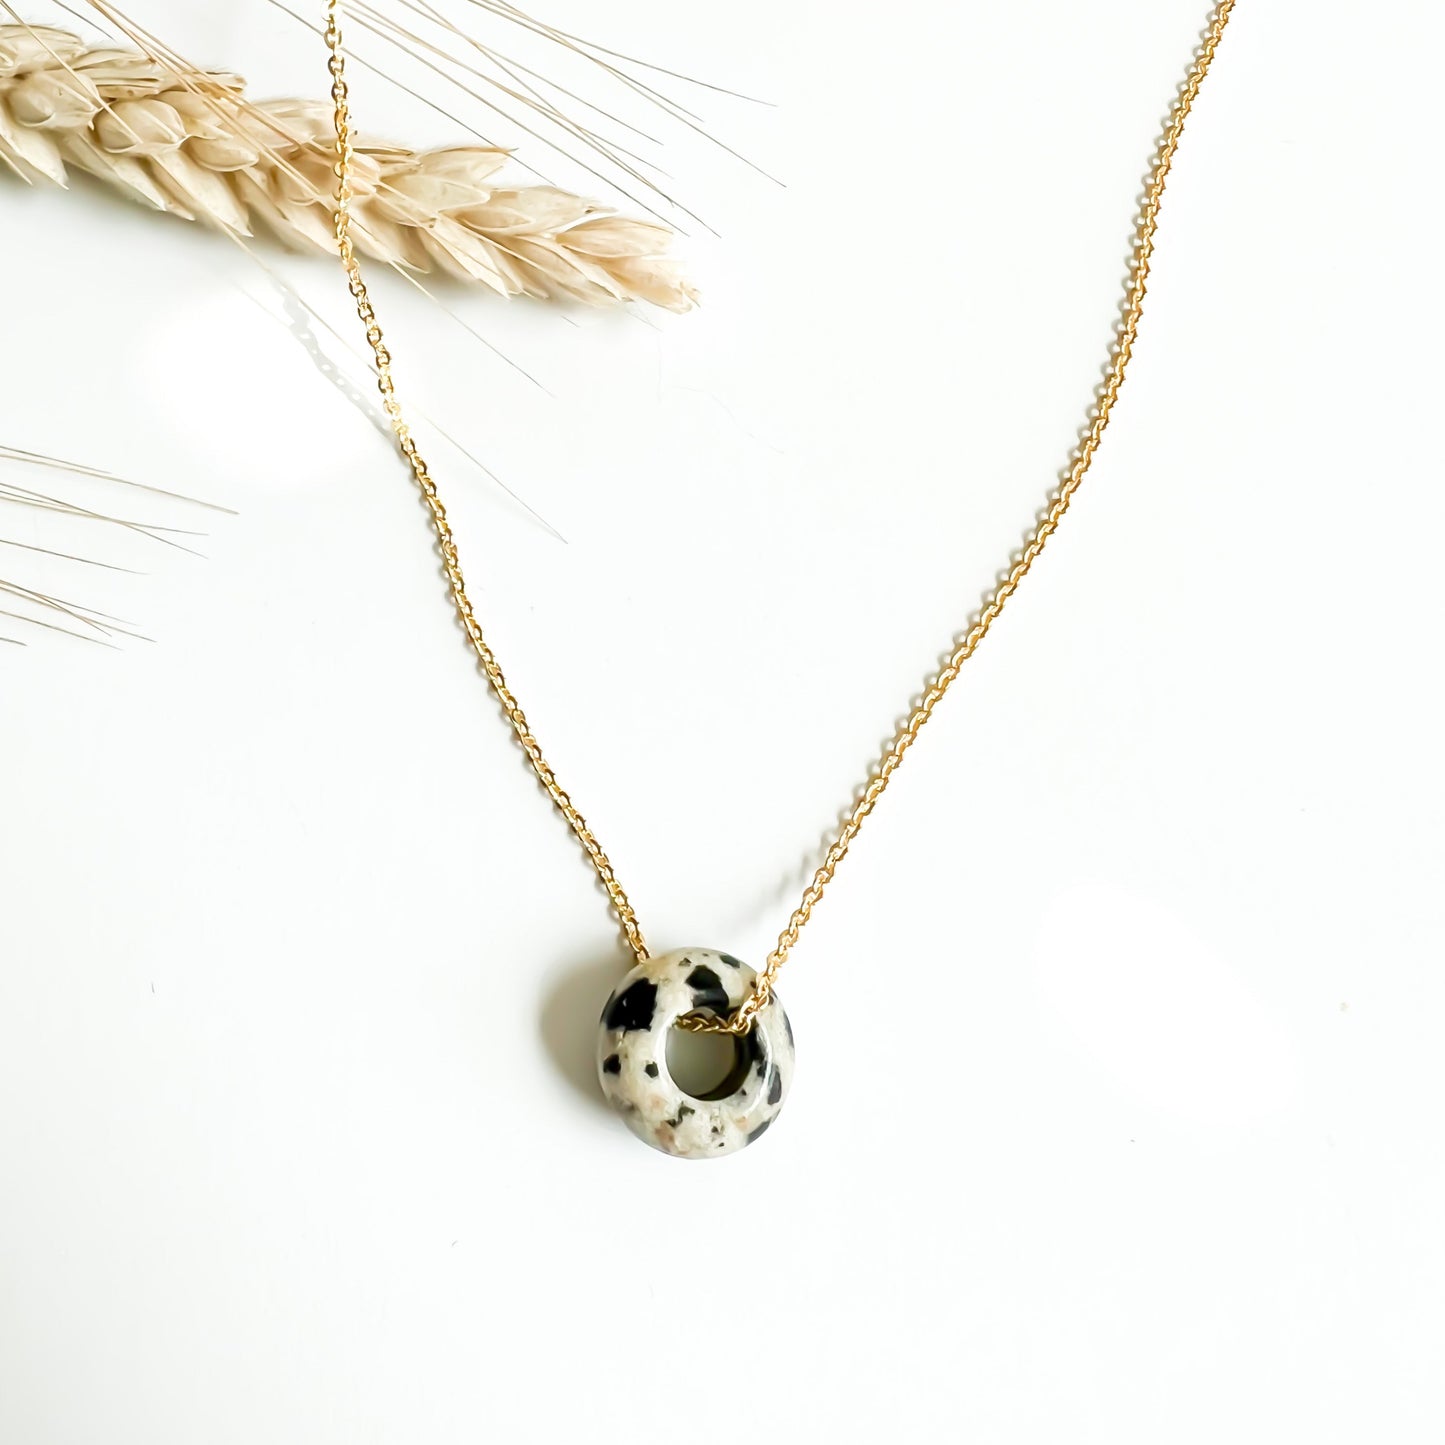 The Solo Necklace in Dalmatian Jasper